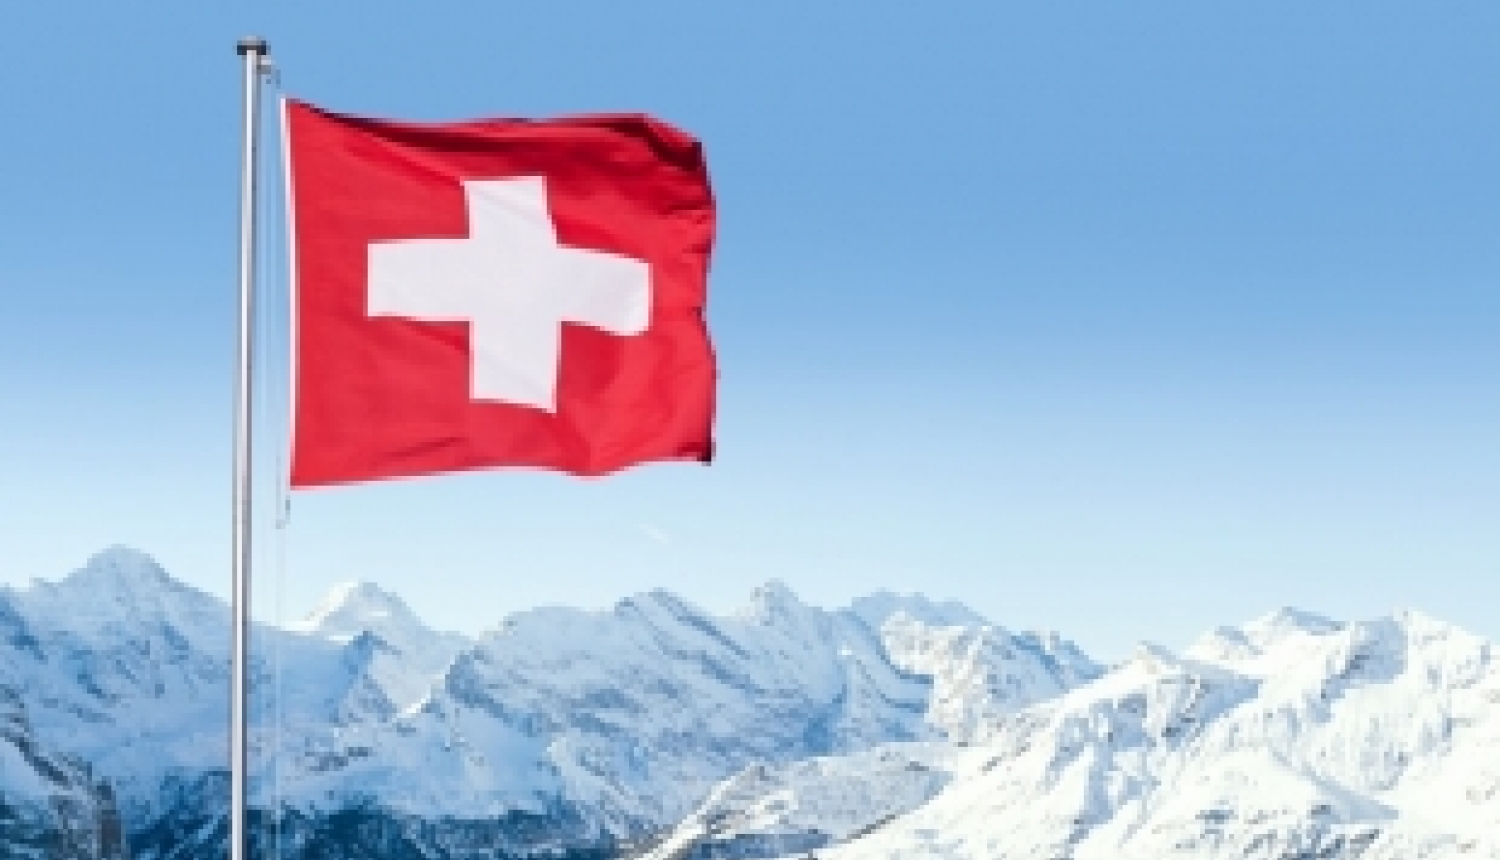 Iespēja pieteikties Šveices valdības izcilības stipendijai